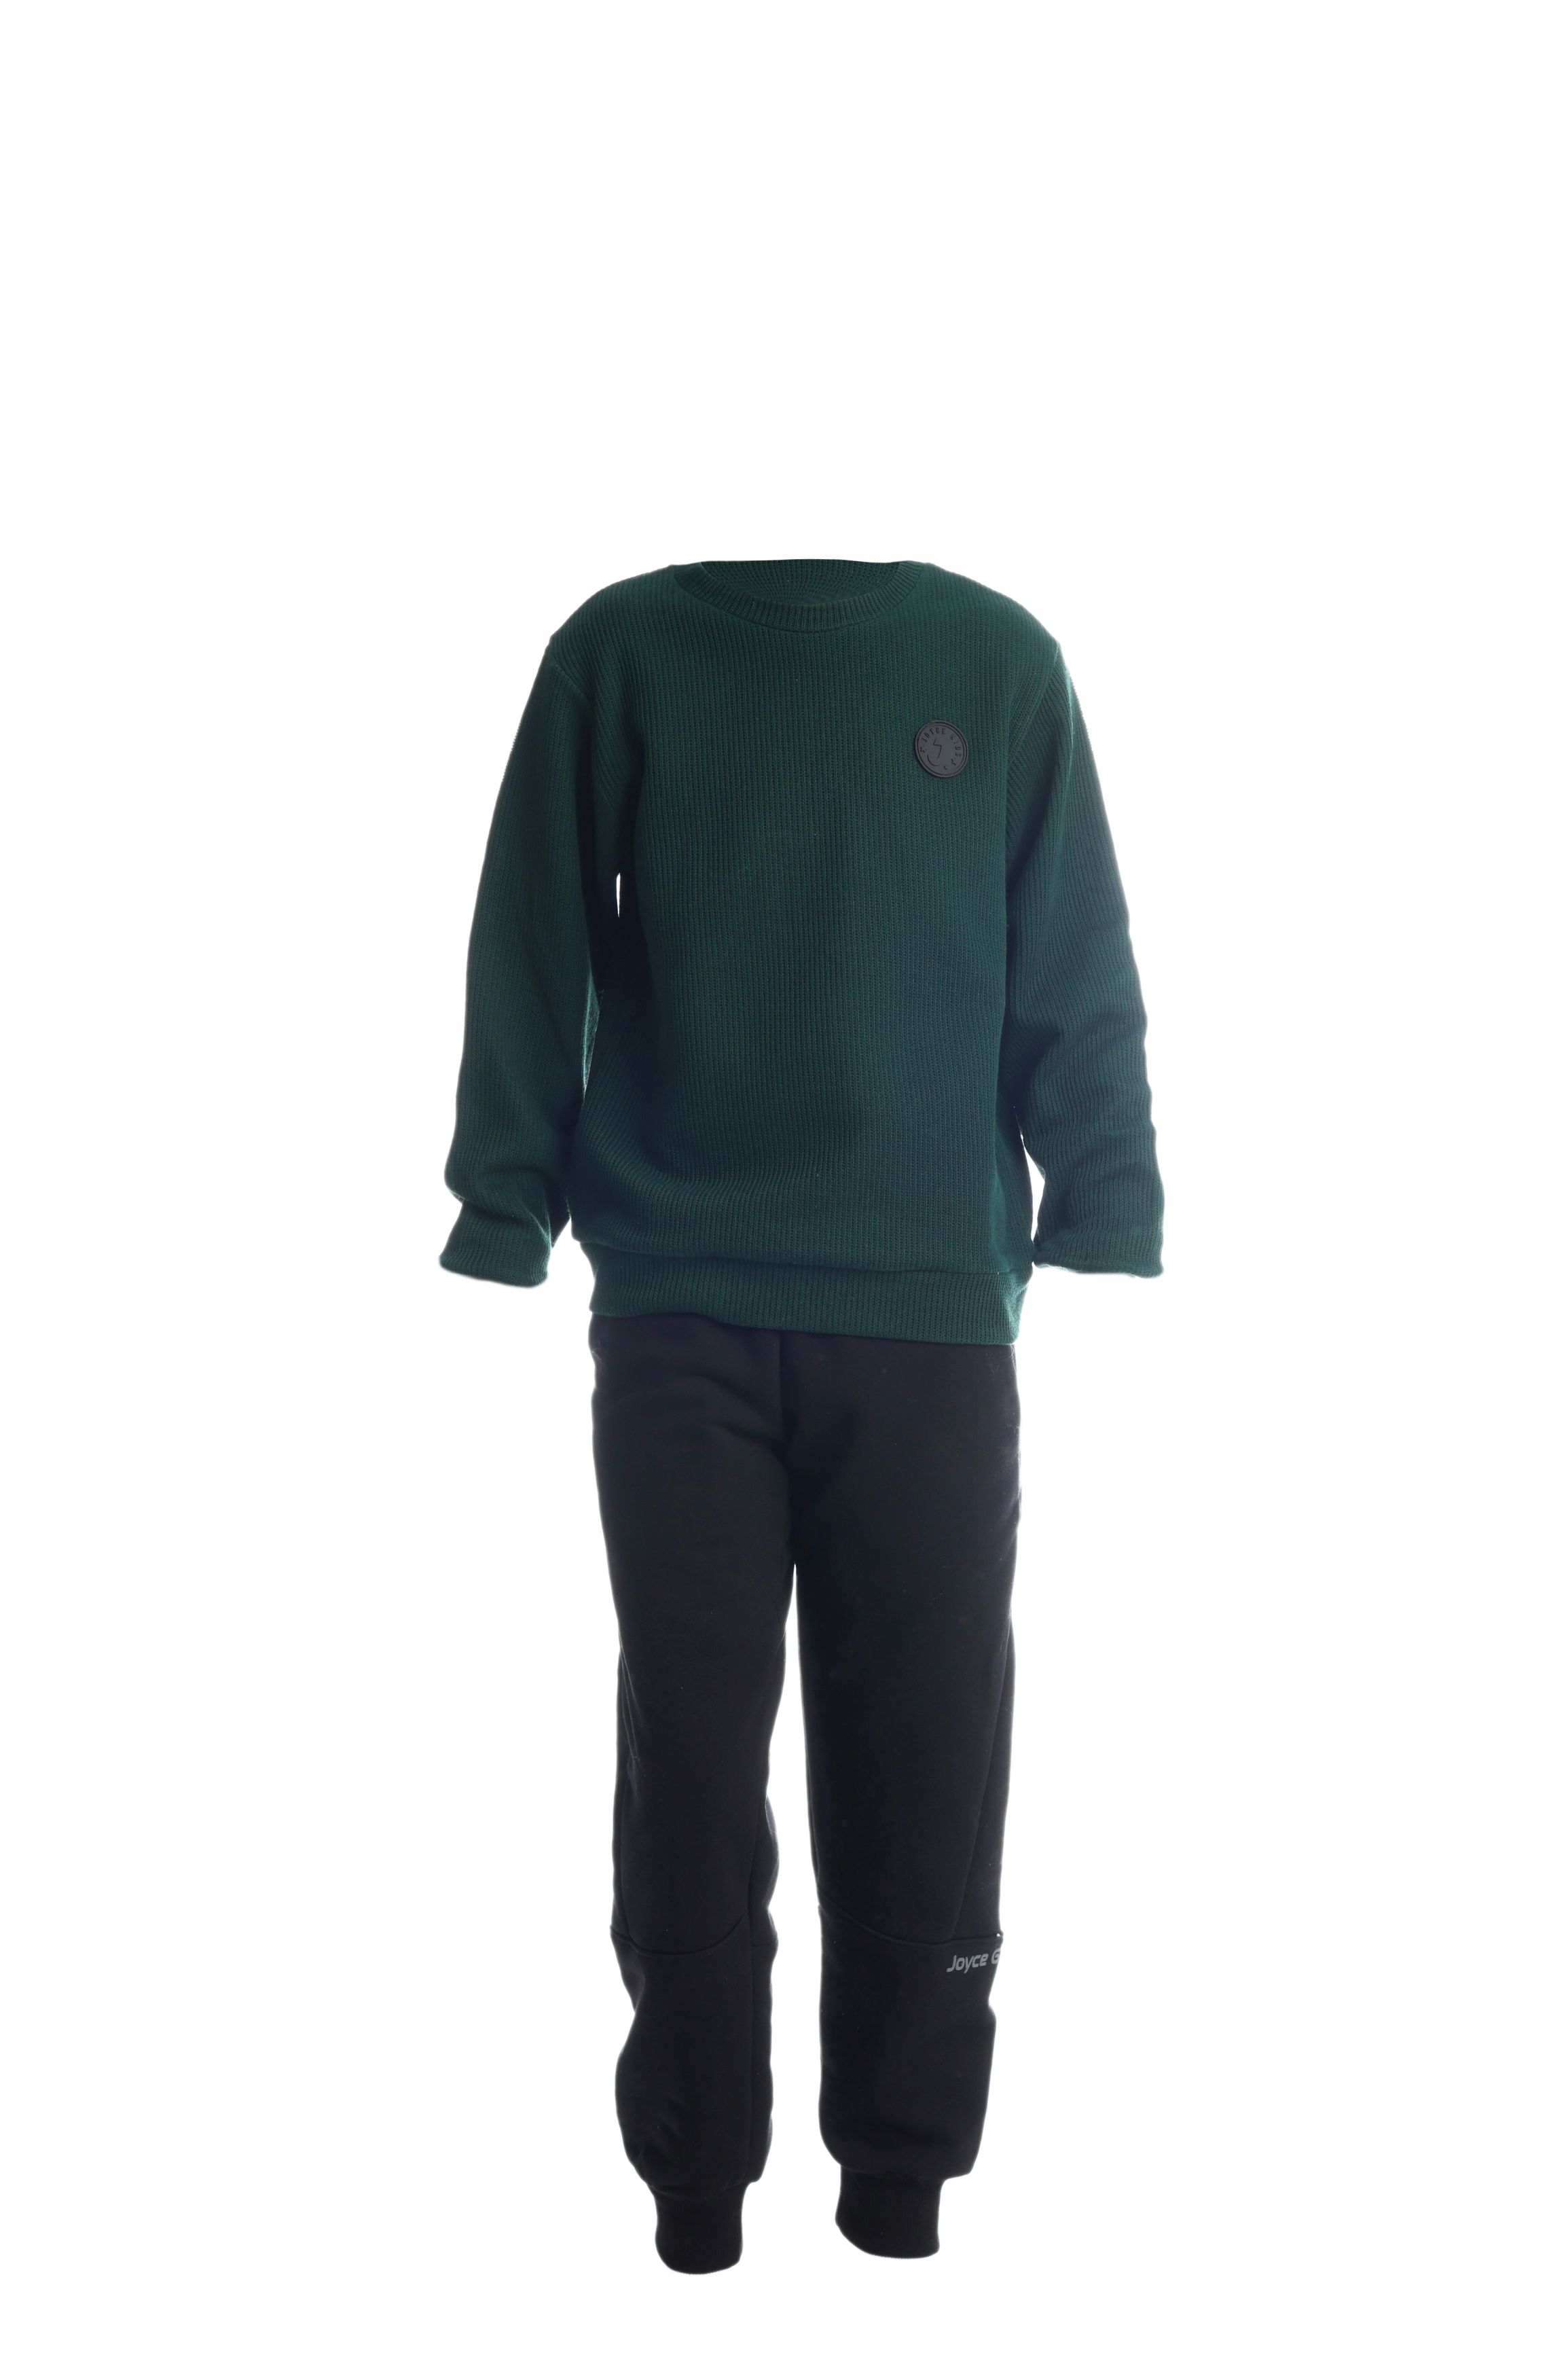 Chlapecké bavlněné tričko/svetr "TAB"/Zelená, vínová Barva: Zelená, Velikost: vel. 8 (126/132 cm)